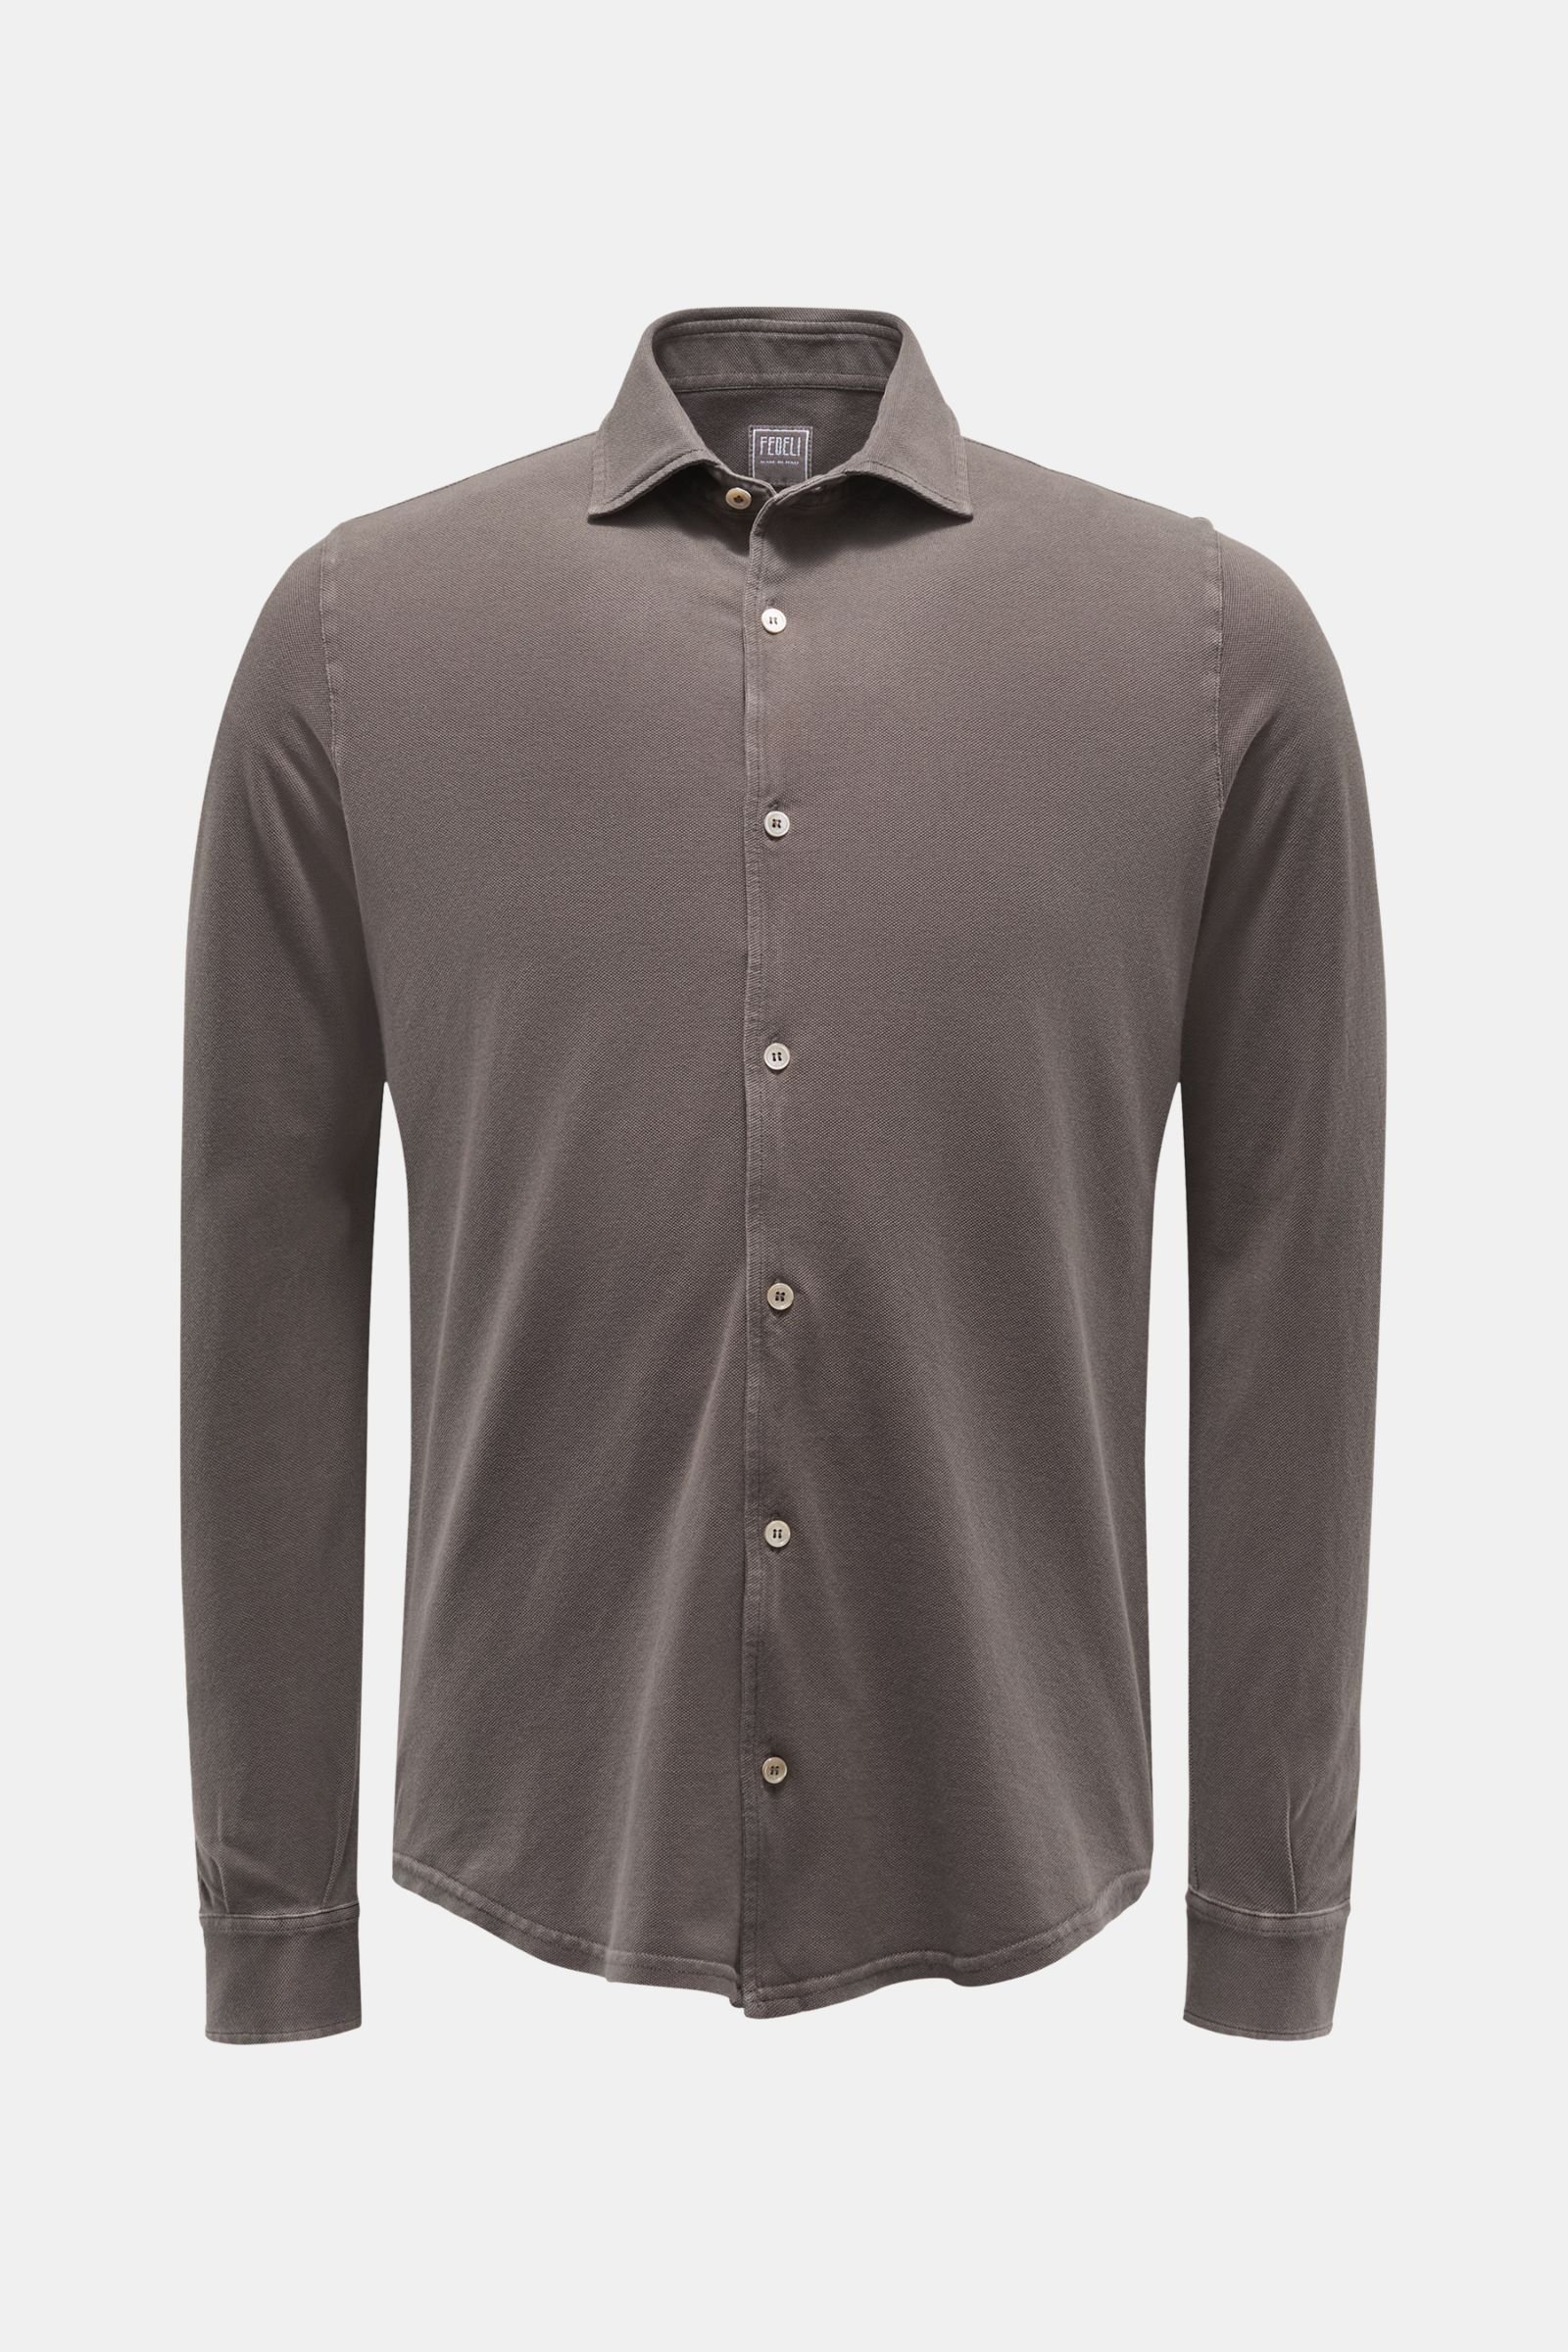 Piqué shirt 'Steve' narrow collar grey-brown